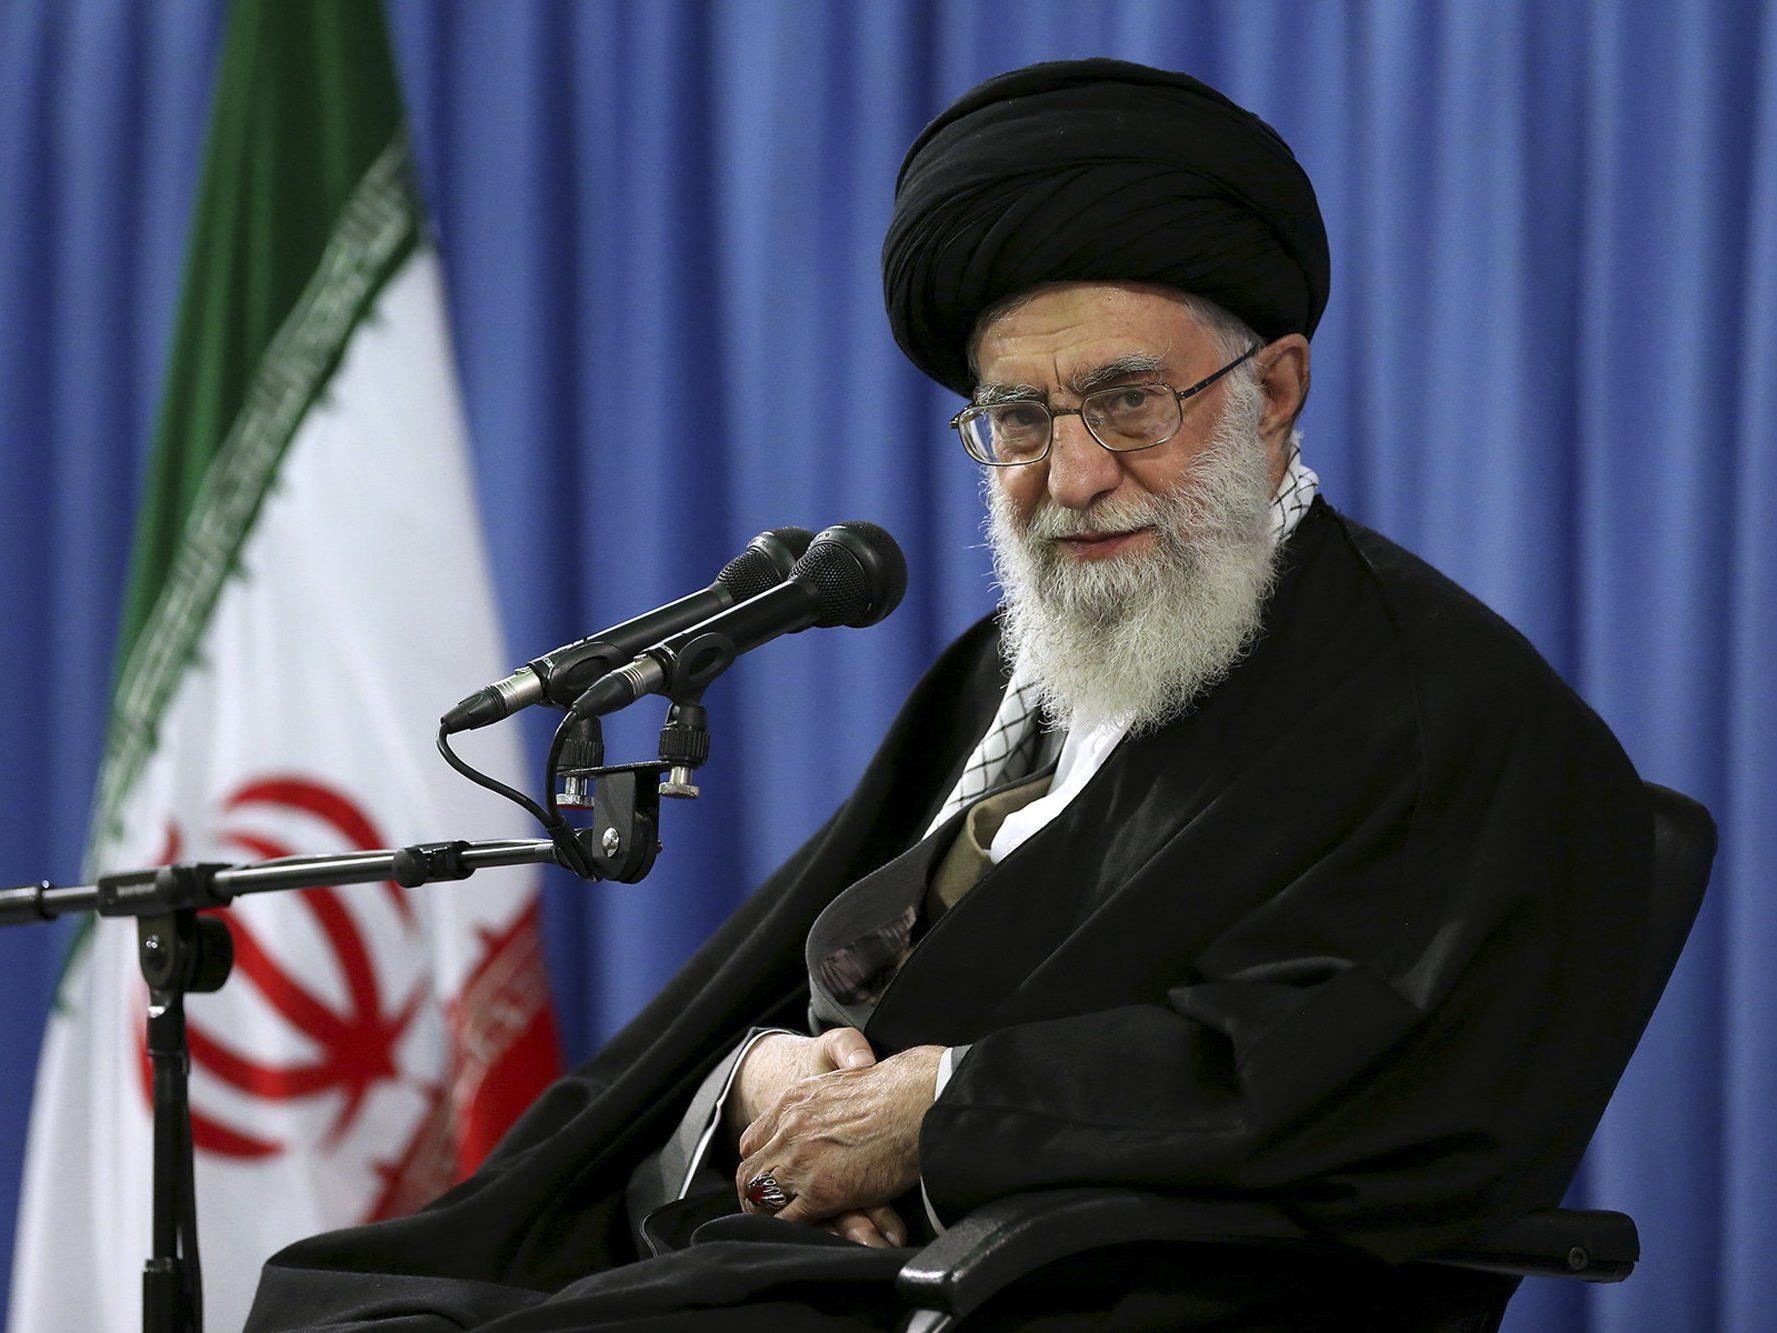 "New York Post": "Kerry bereit, fast alles für einen Deal zu tun - Der Iran weiß das"